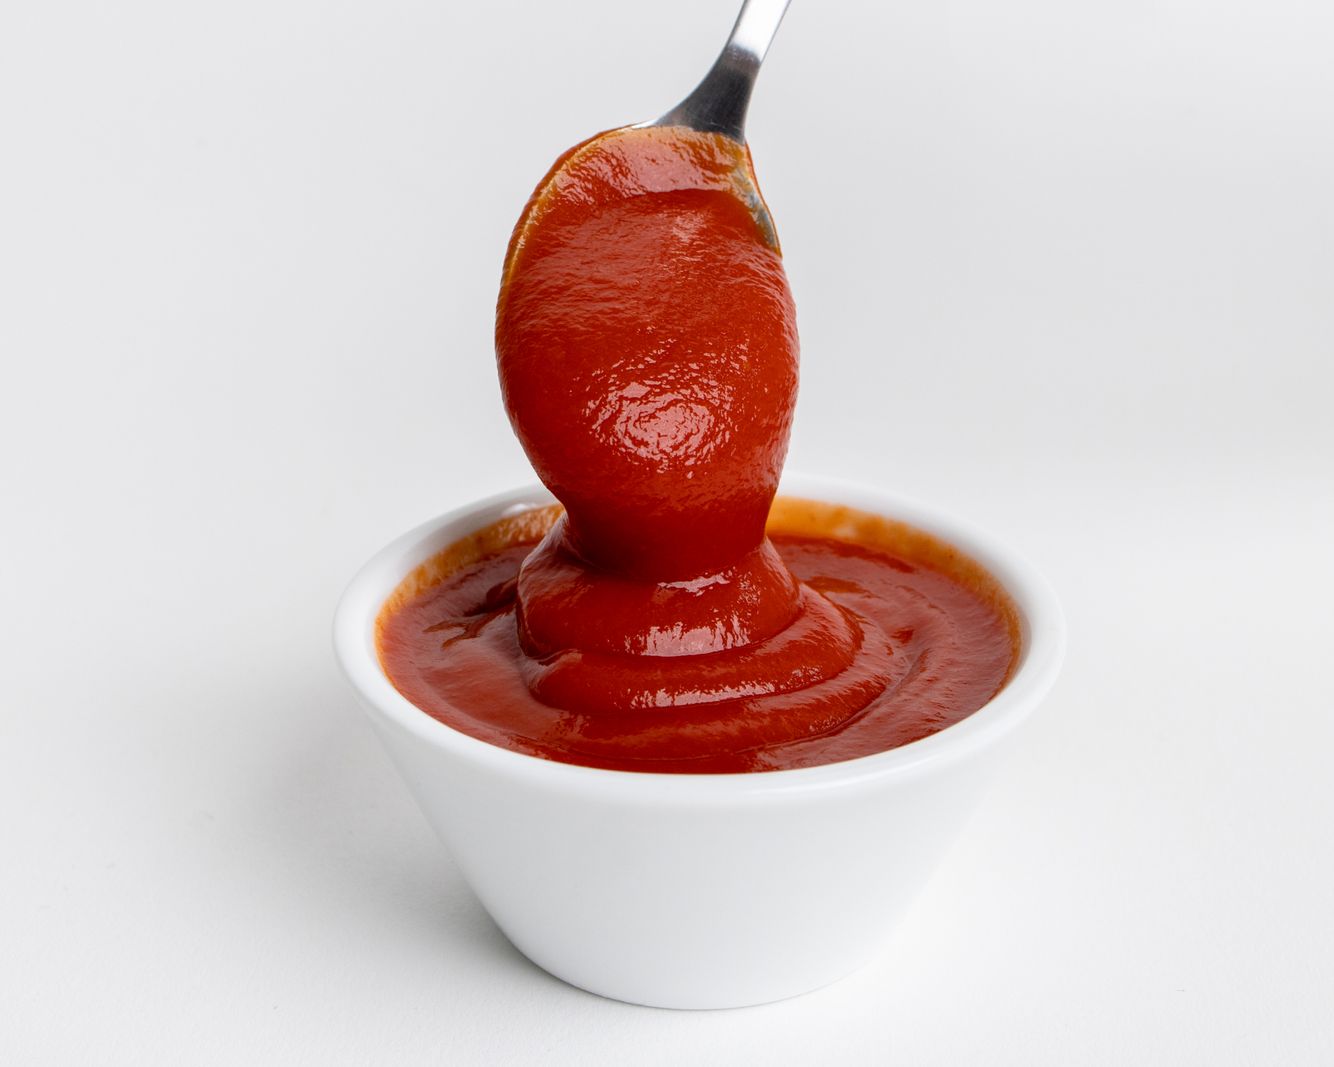 Vilgain Ketchup cu conținut scăzut de zahăr